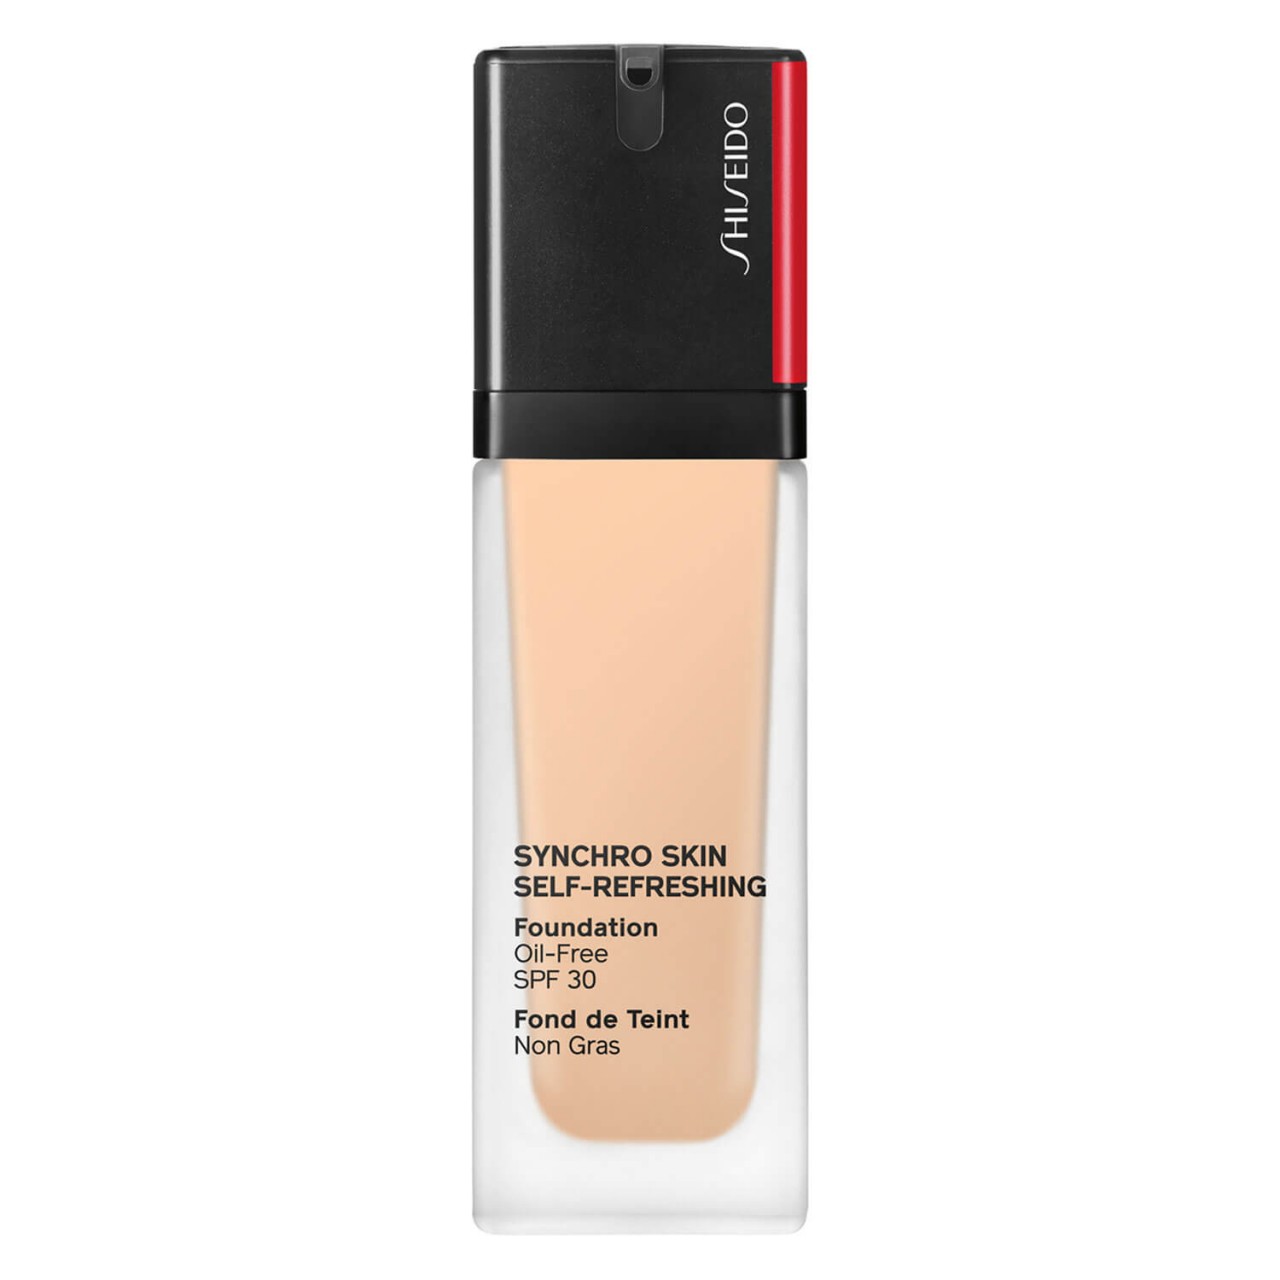 Synchro Skin Self-Refreshing - Foundation SPF 30 Linen 220 von Shiseido